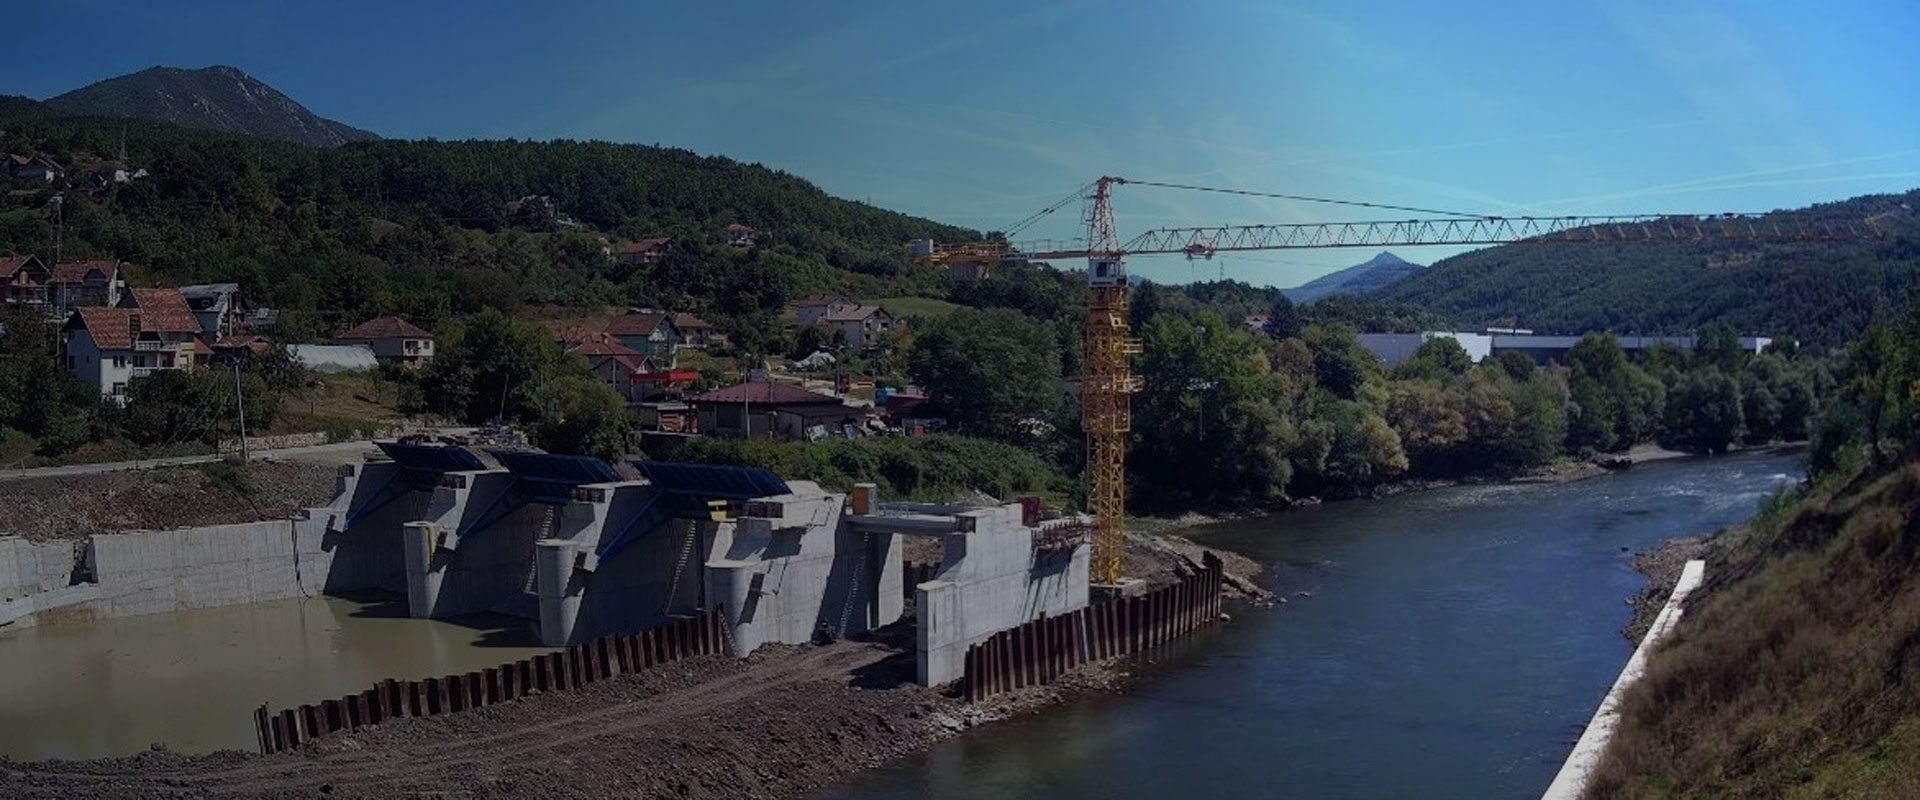 Hydropower plant in Serbia